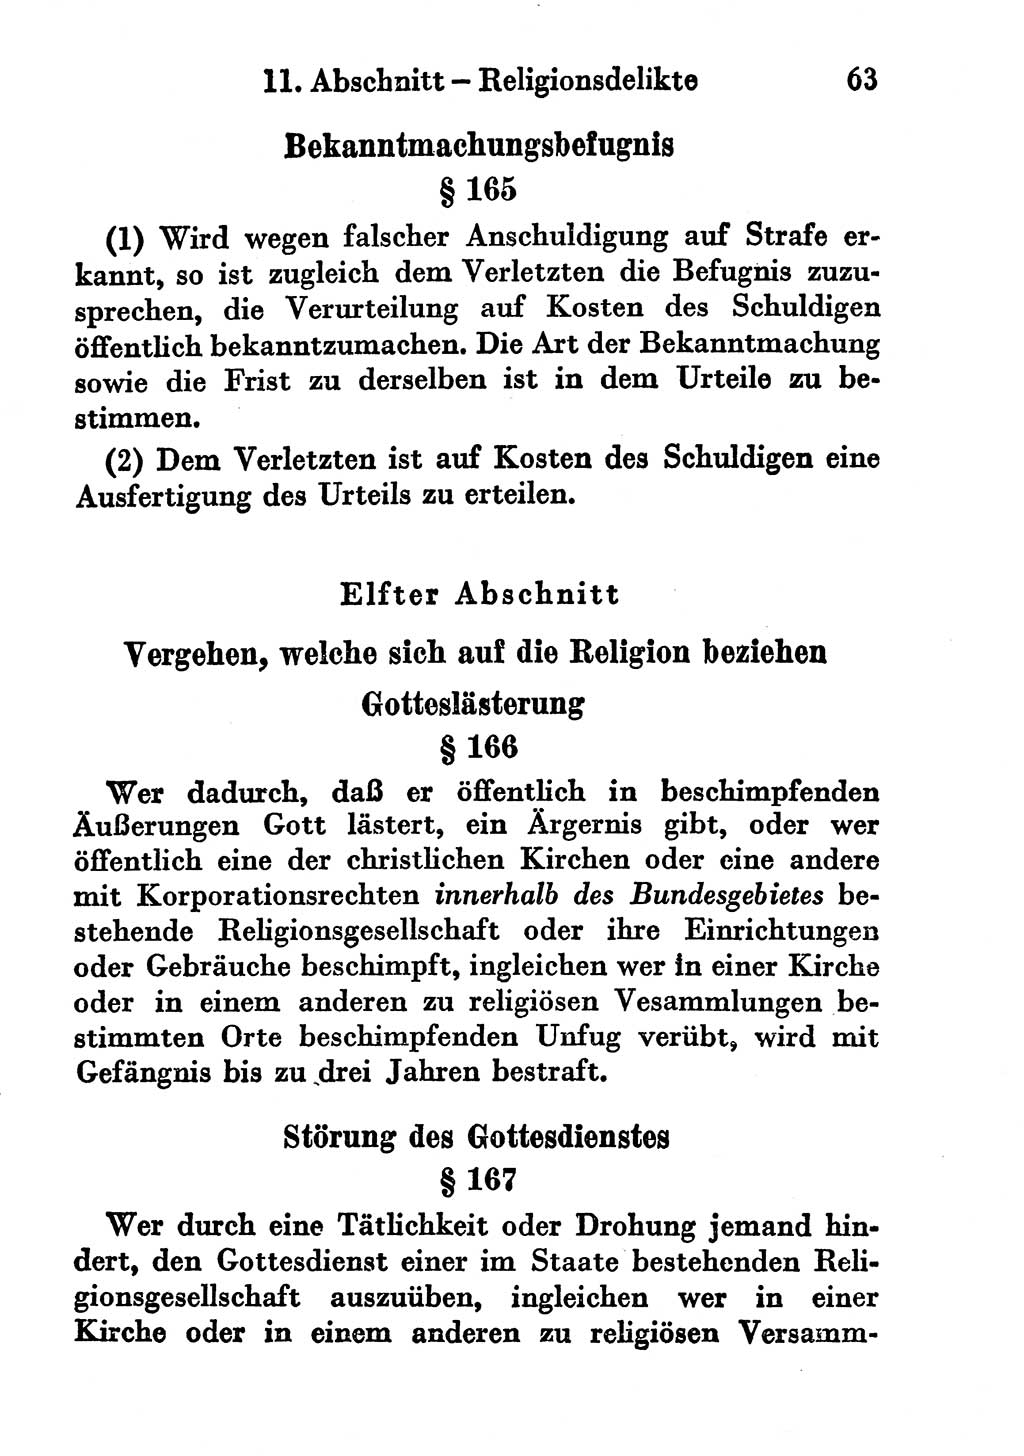 Strafgesetzbuch (StGB) und andere Strafgesetze [Deutsche Demokratische Republik (DDR)] 1956, Seite 63 (StGB Strafges. DDR 1956, S. 63)